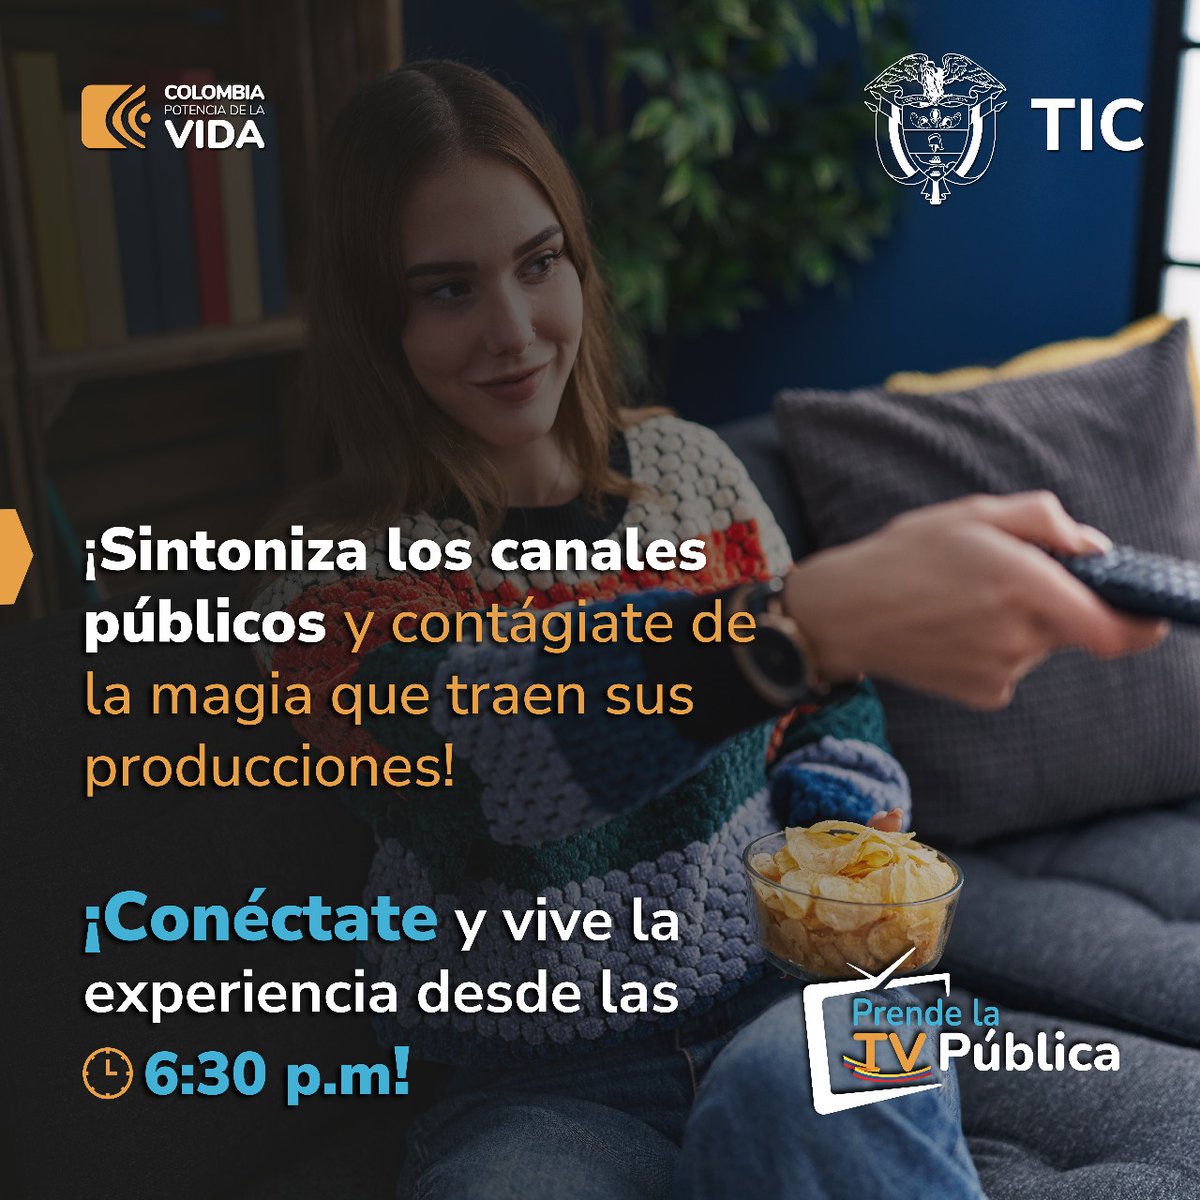 ¡No te pierdas el lanzamiento de las producciones de los canales públicos en el marco del #FICCI! #PrendeLaTVPública desde las 6:30 p.m. y descubre lo que tiene para ofrecerte. ✨